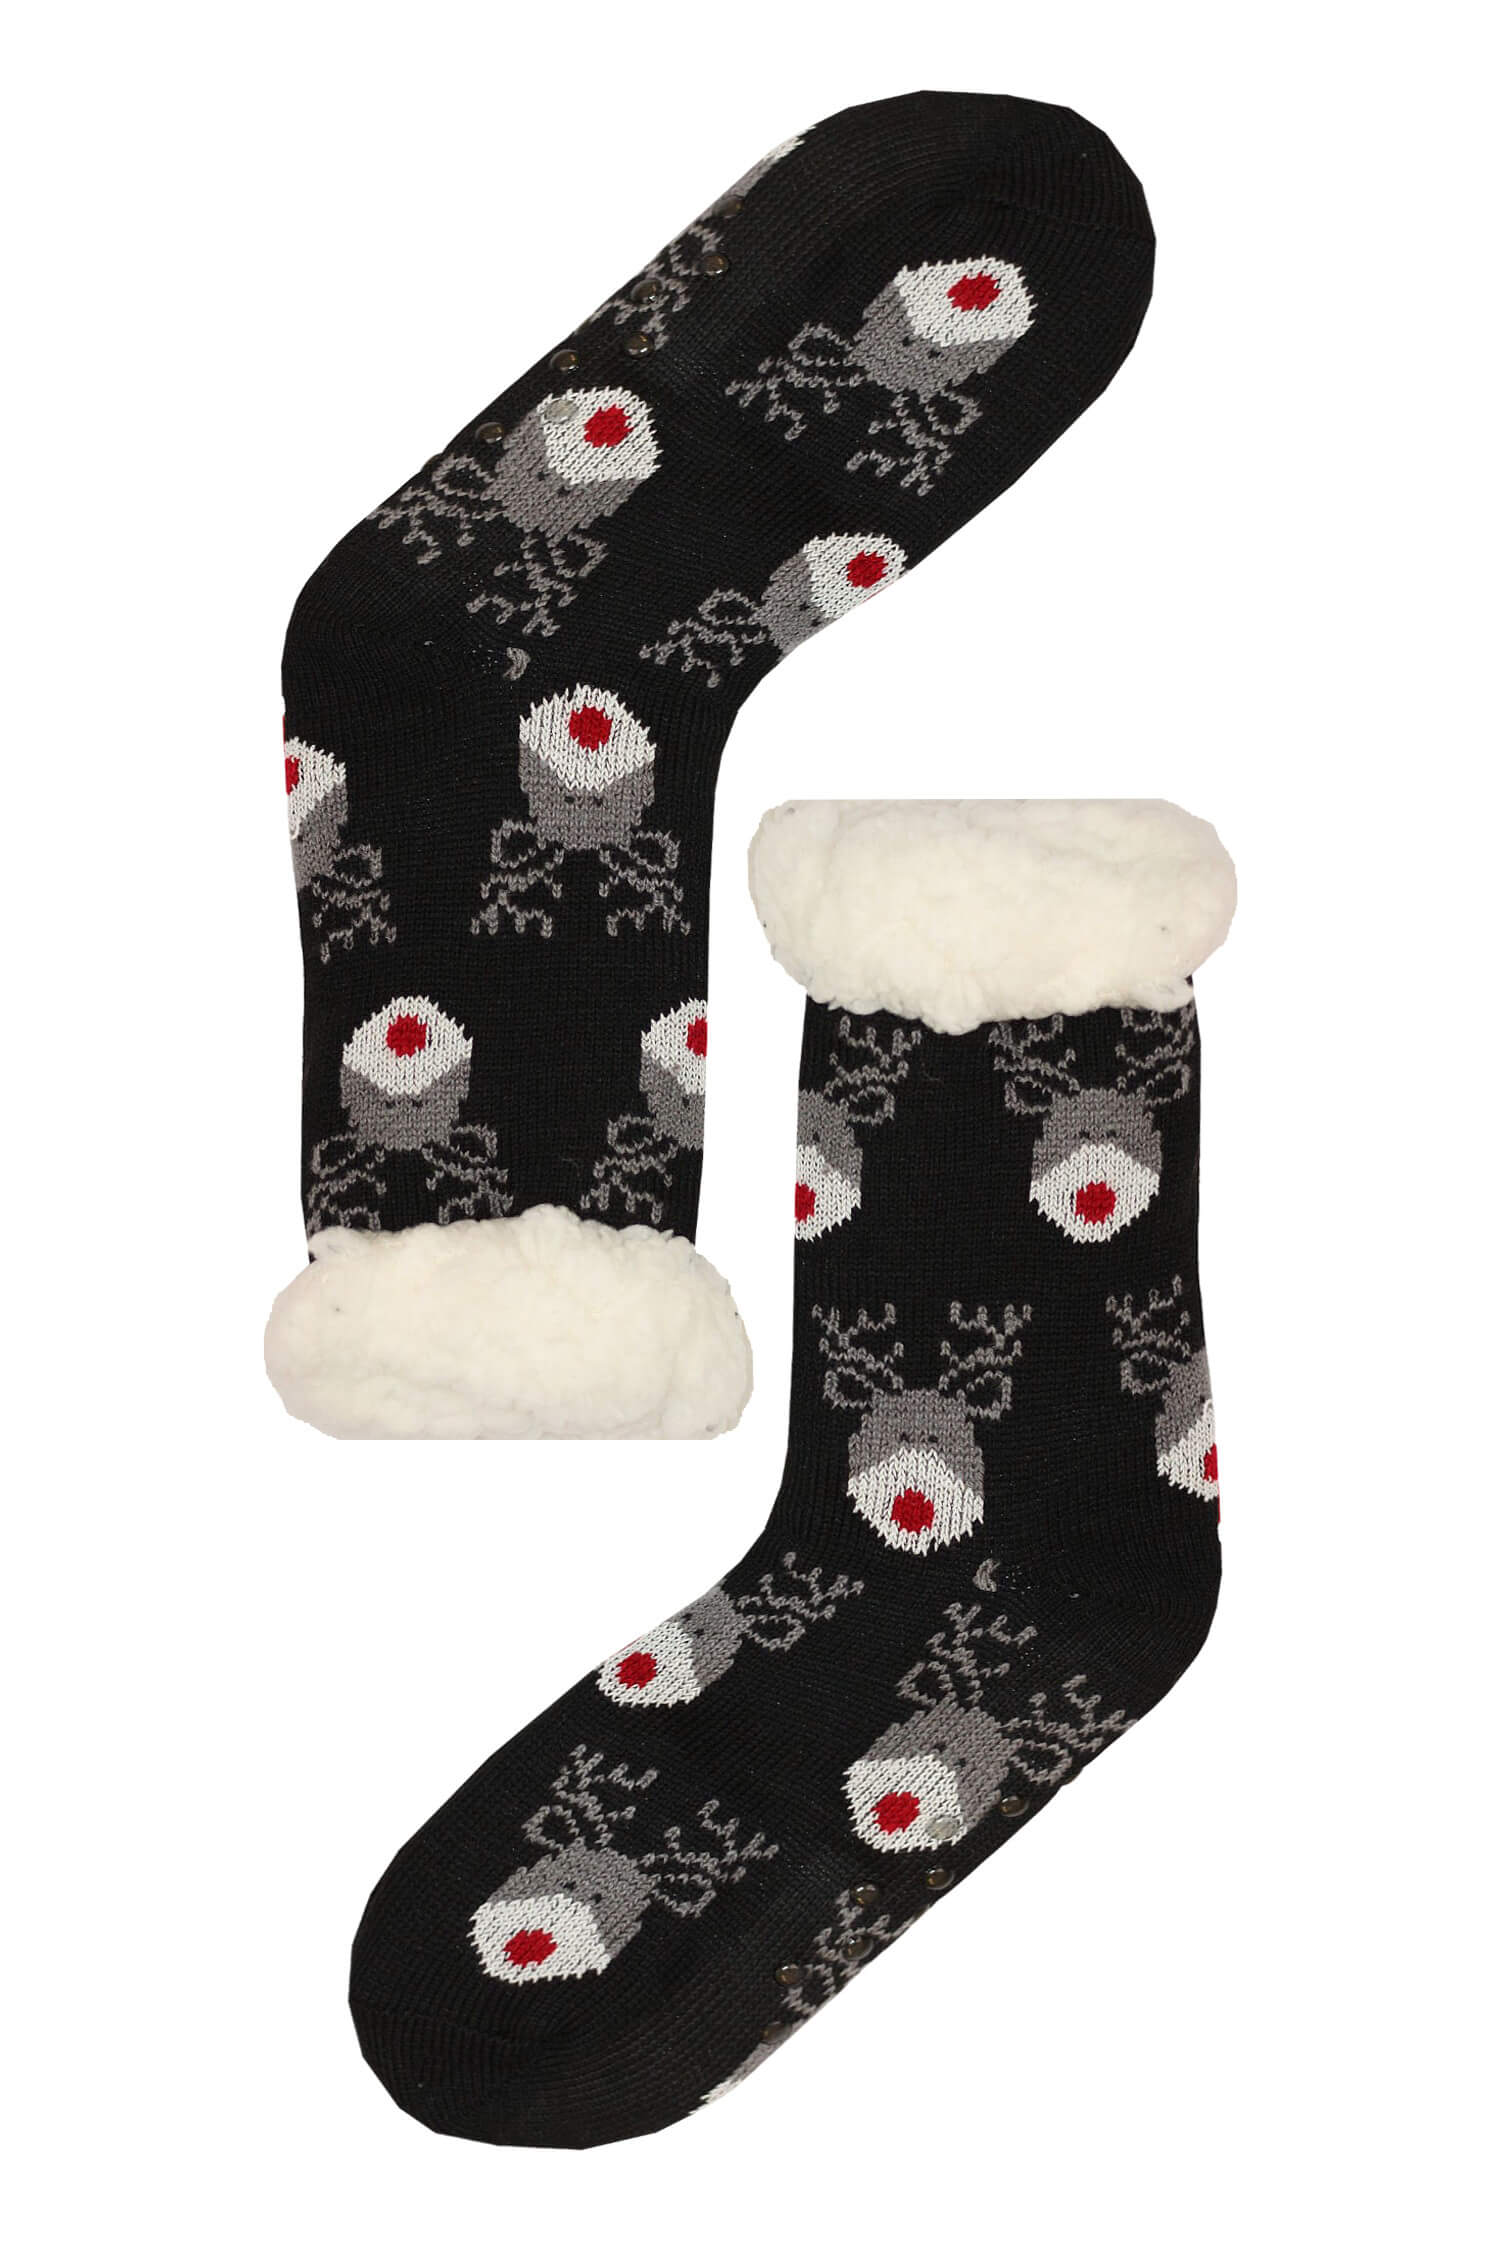 Mounty black hřejivé ponožky beránek WW058 35-38 černá